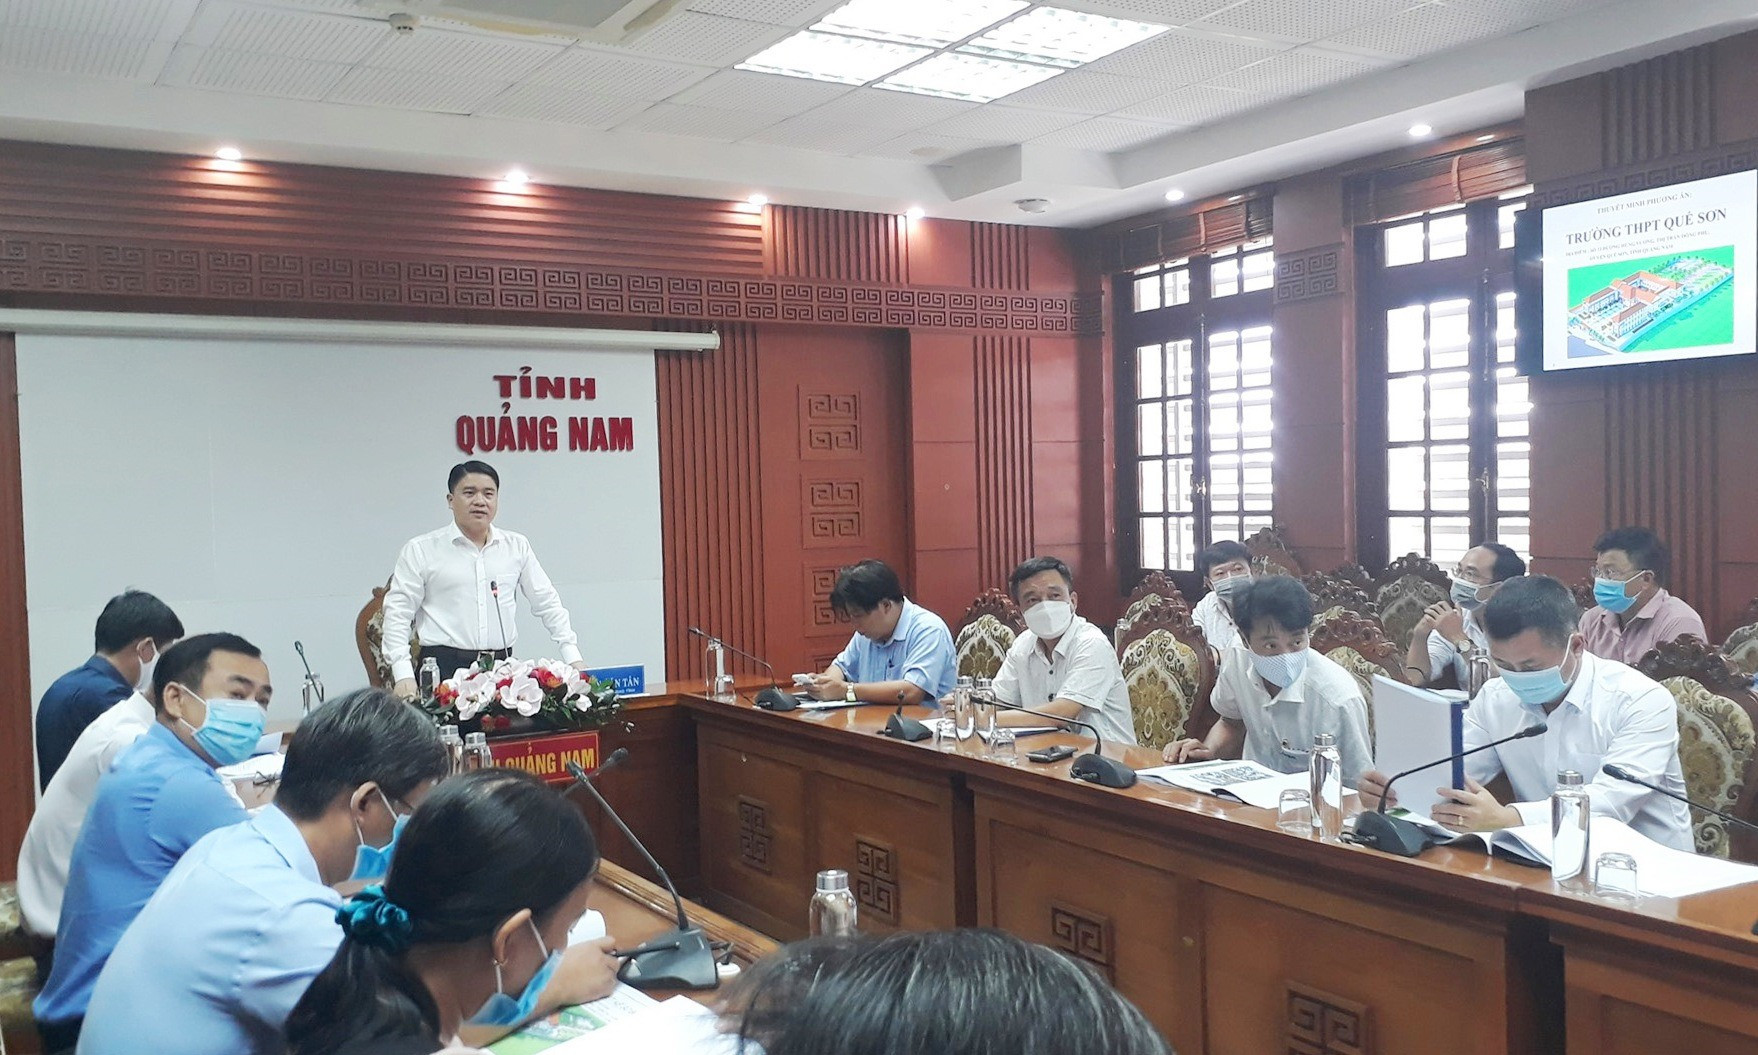 Phó Chủ tịch UBND tỉnh Trần Văn Tân đề nghị đơn vị thiết kế chỉnh sửa và sớm hoàn thiện để trình UBND tỉnh phê duyệt. Ảnh: X.P